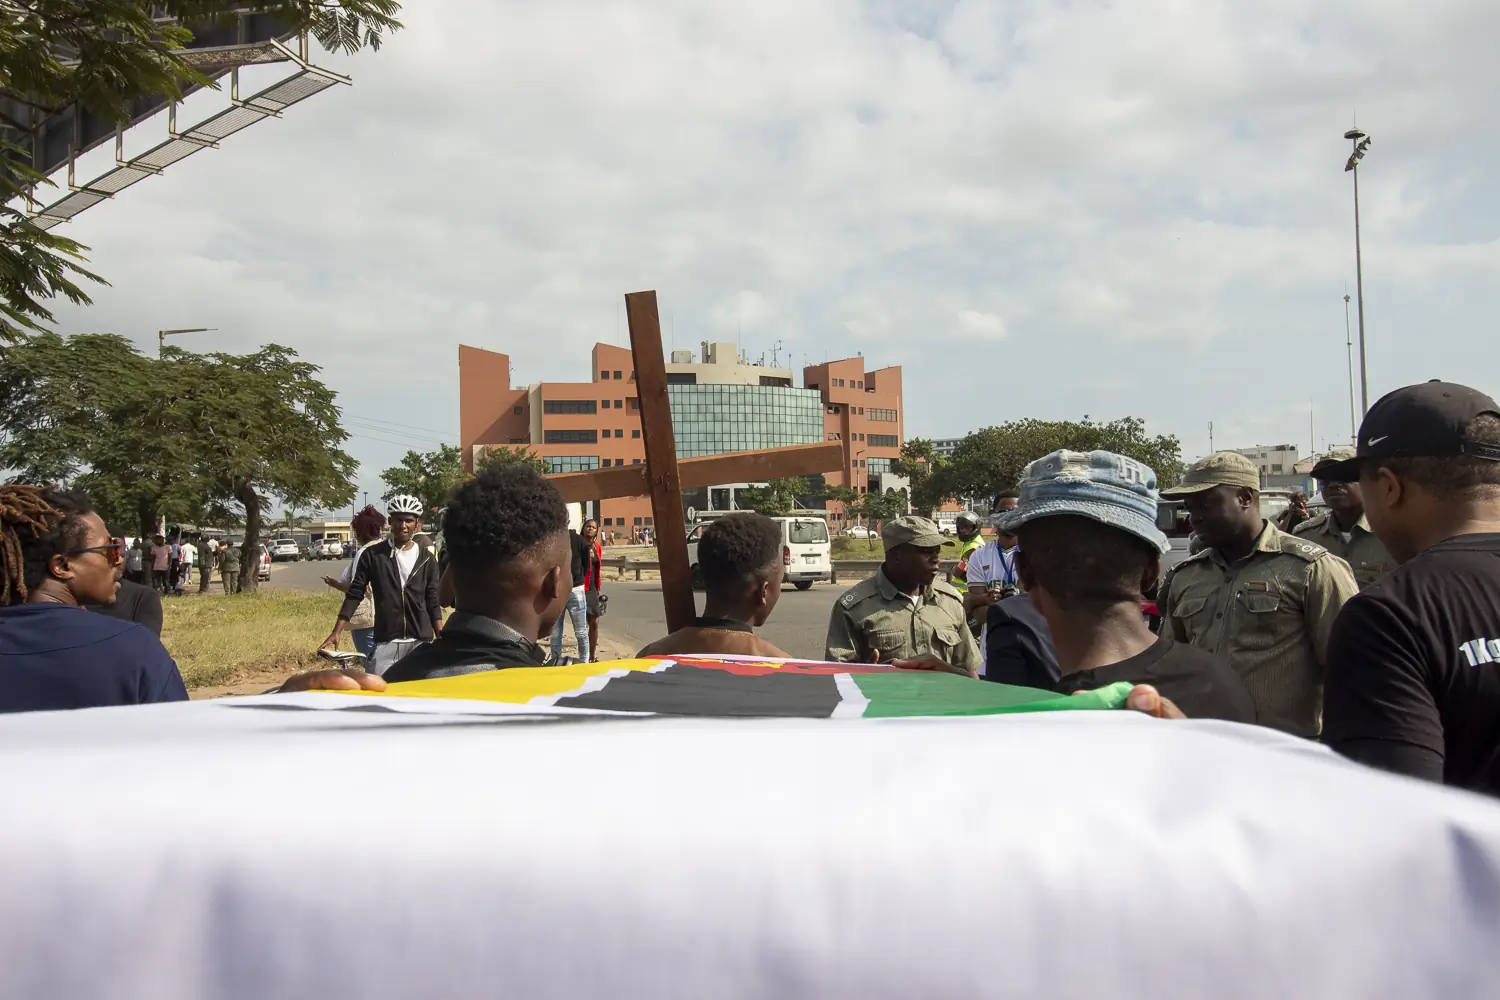 O caixão com o INCM como destino em frente, com obstáculo de alguns agentes da Polícia da República de Moçambique. Após algum mal-entendido sobre o trajecto, o caixão prosseguiu.